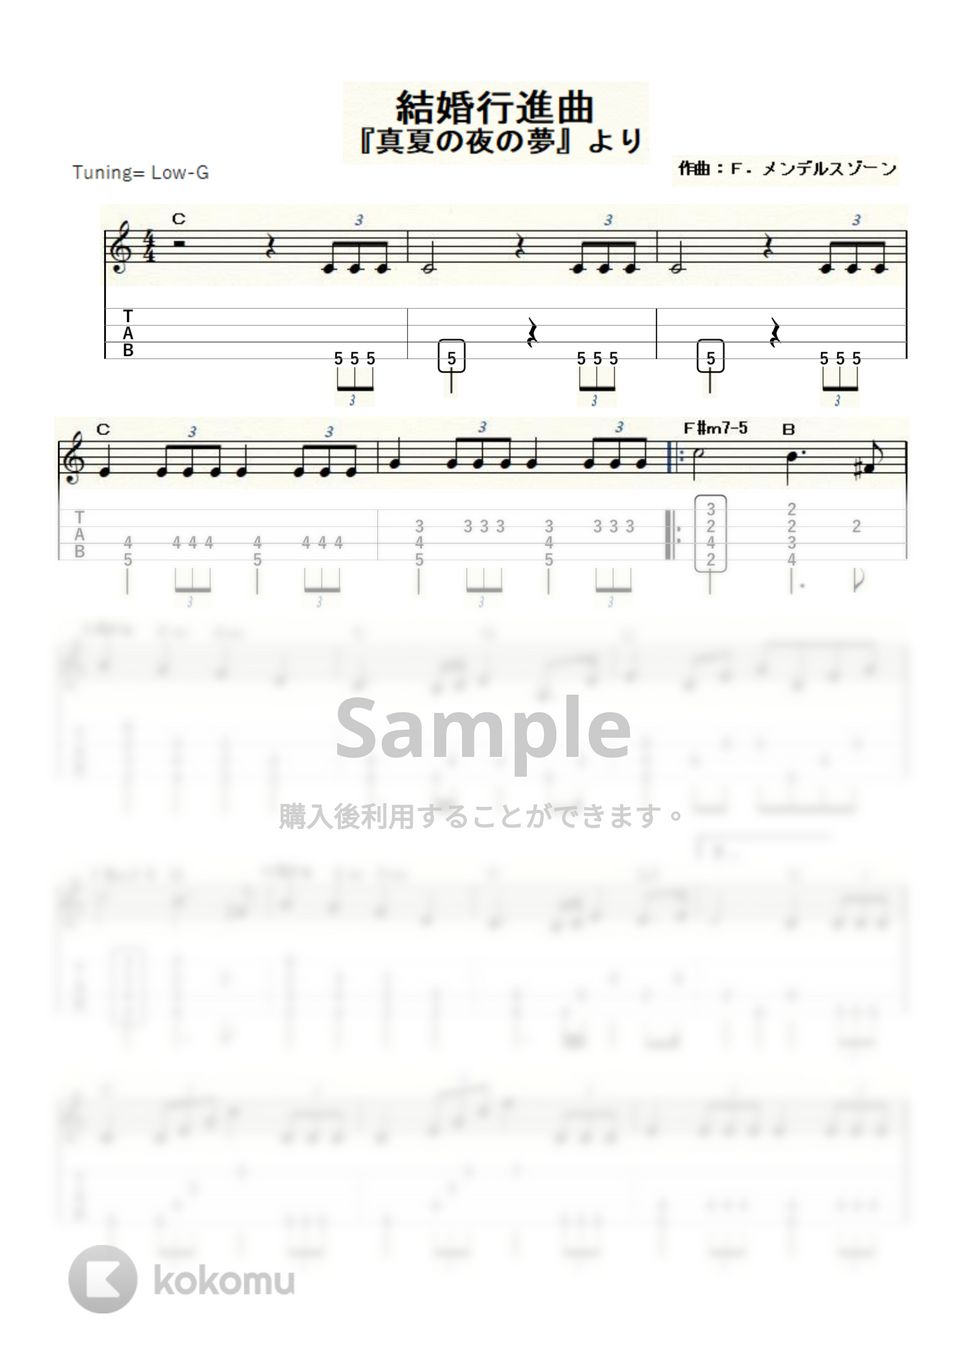 メンデルスゾーン - 結婚行進曲 (ｳｸﾚﾚｿﾛ/Low-G/中級) by ukulelepapa